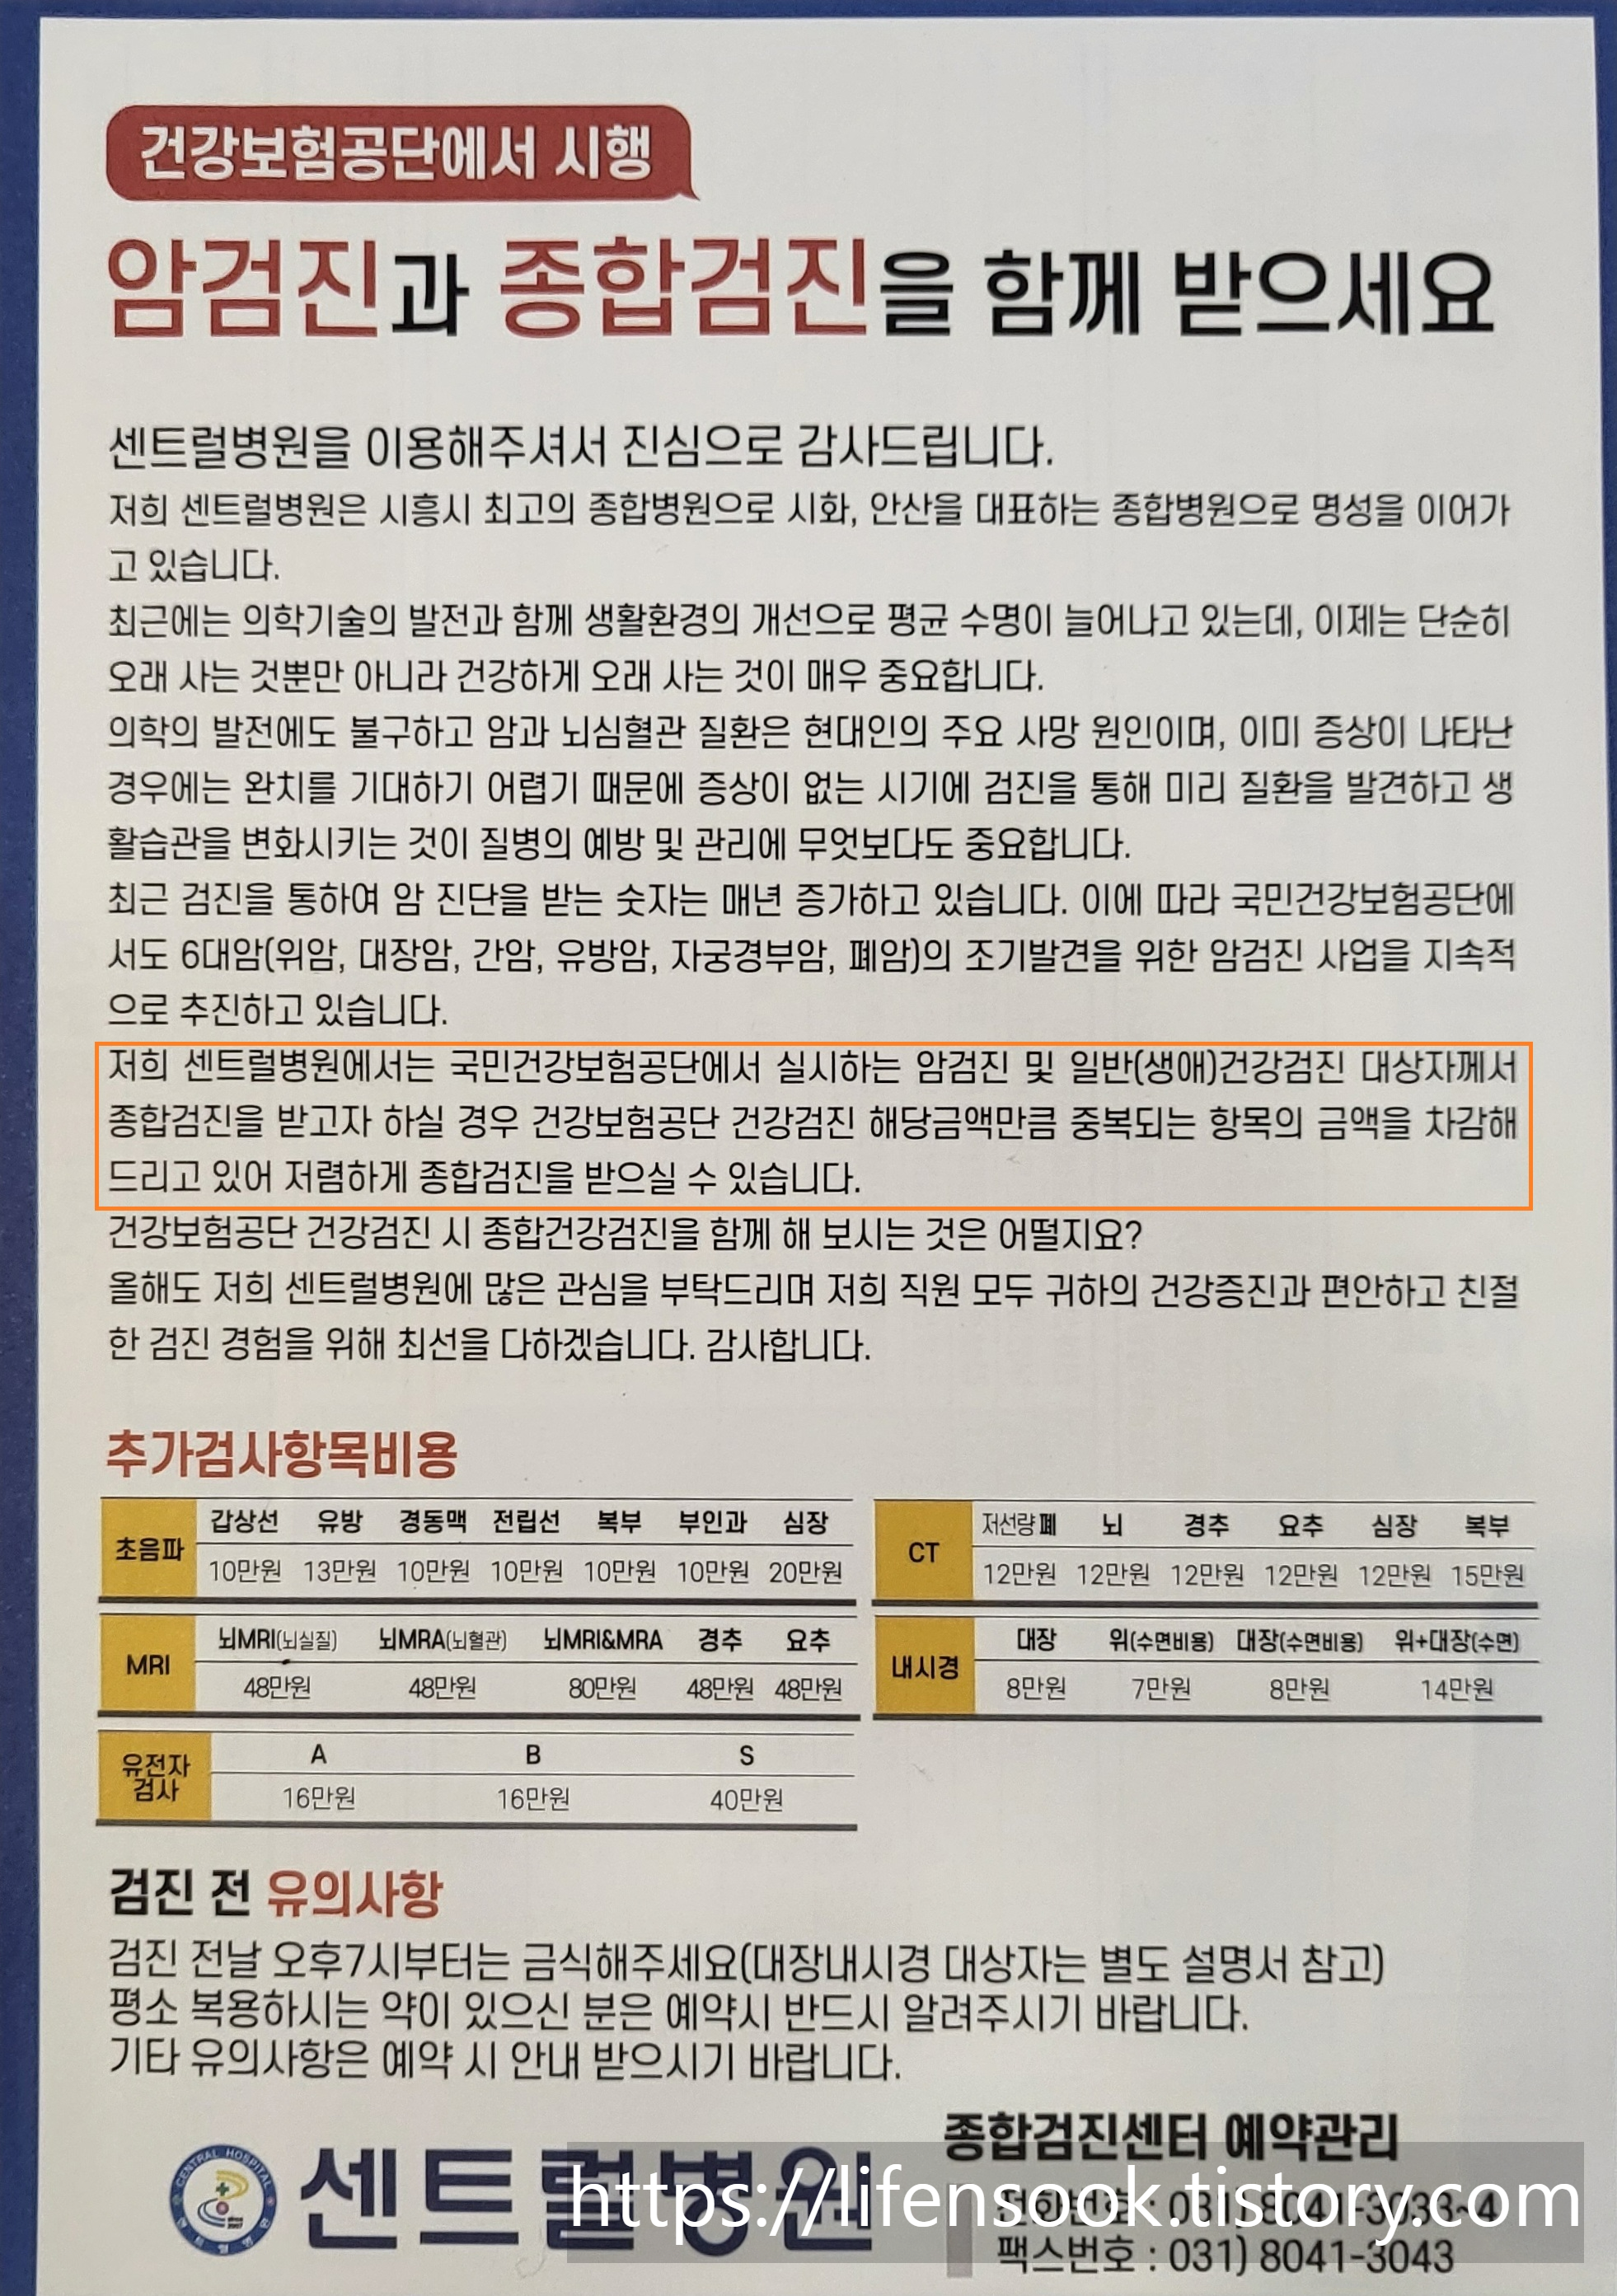 시흥 센트럴병원 종합검진 안내 1